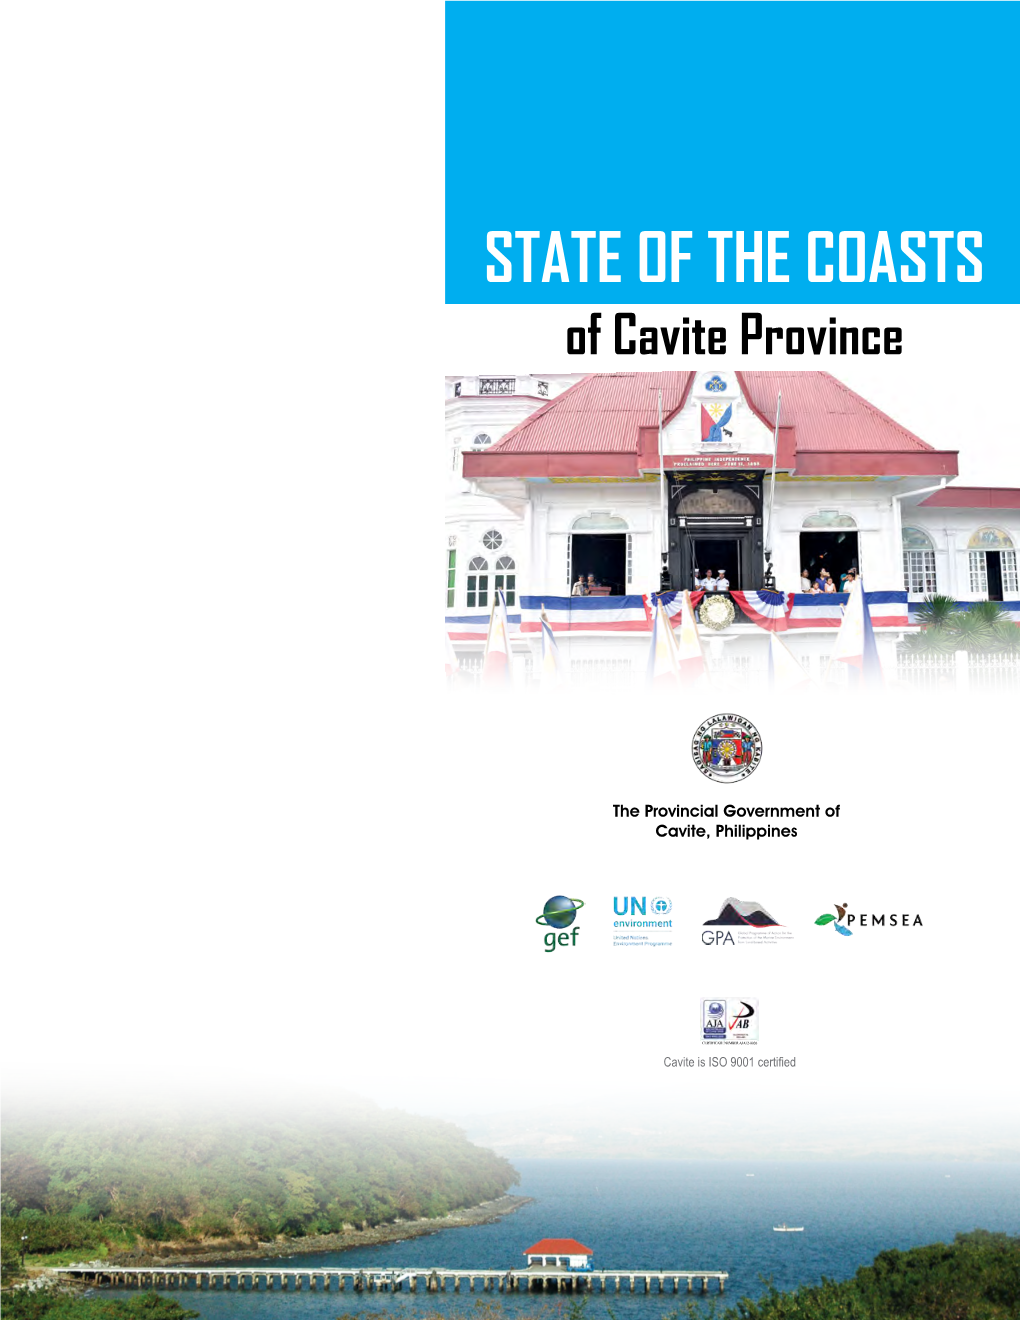 Cavite Province